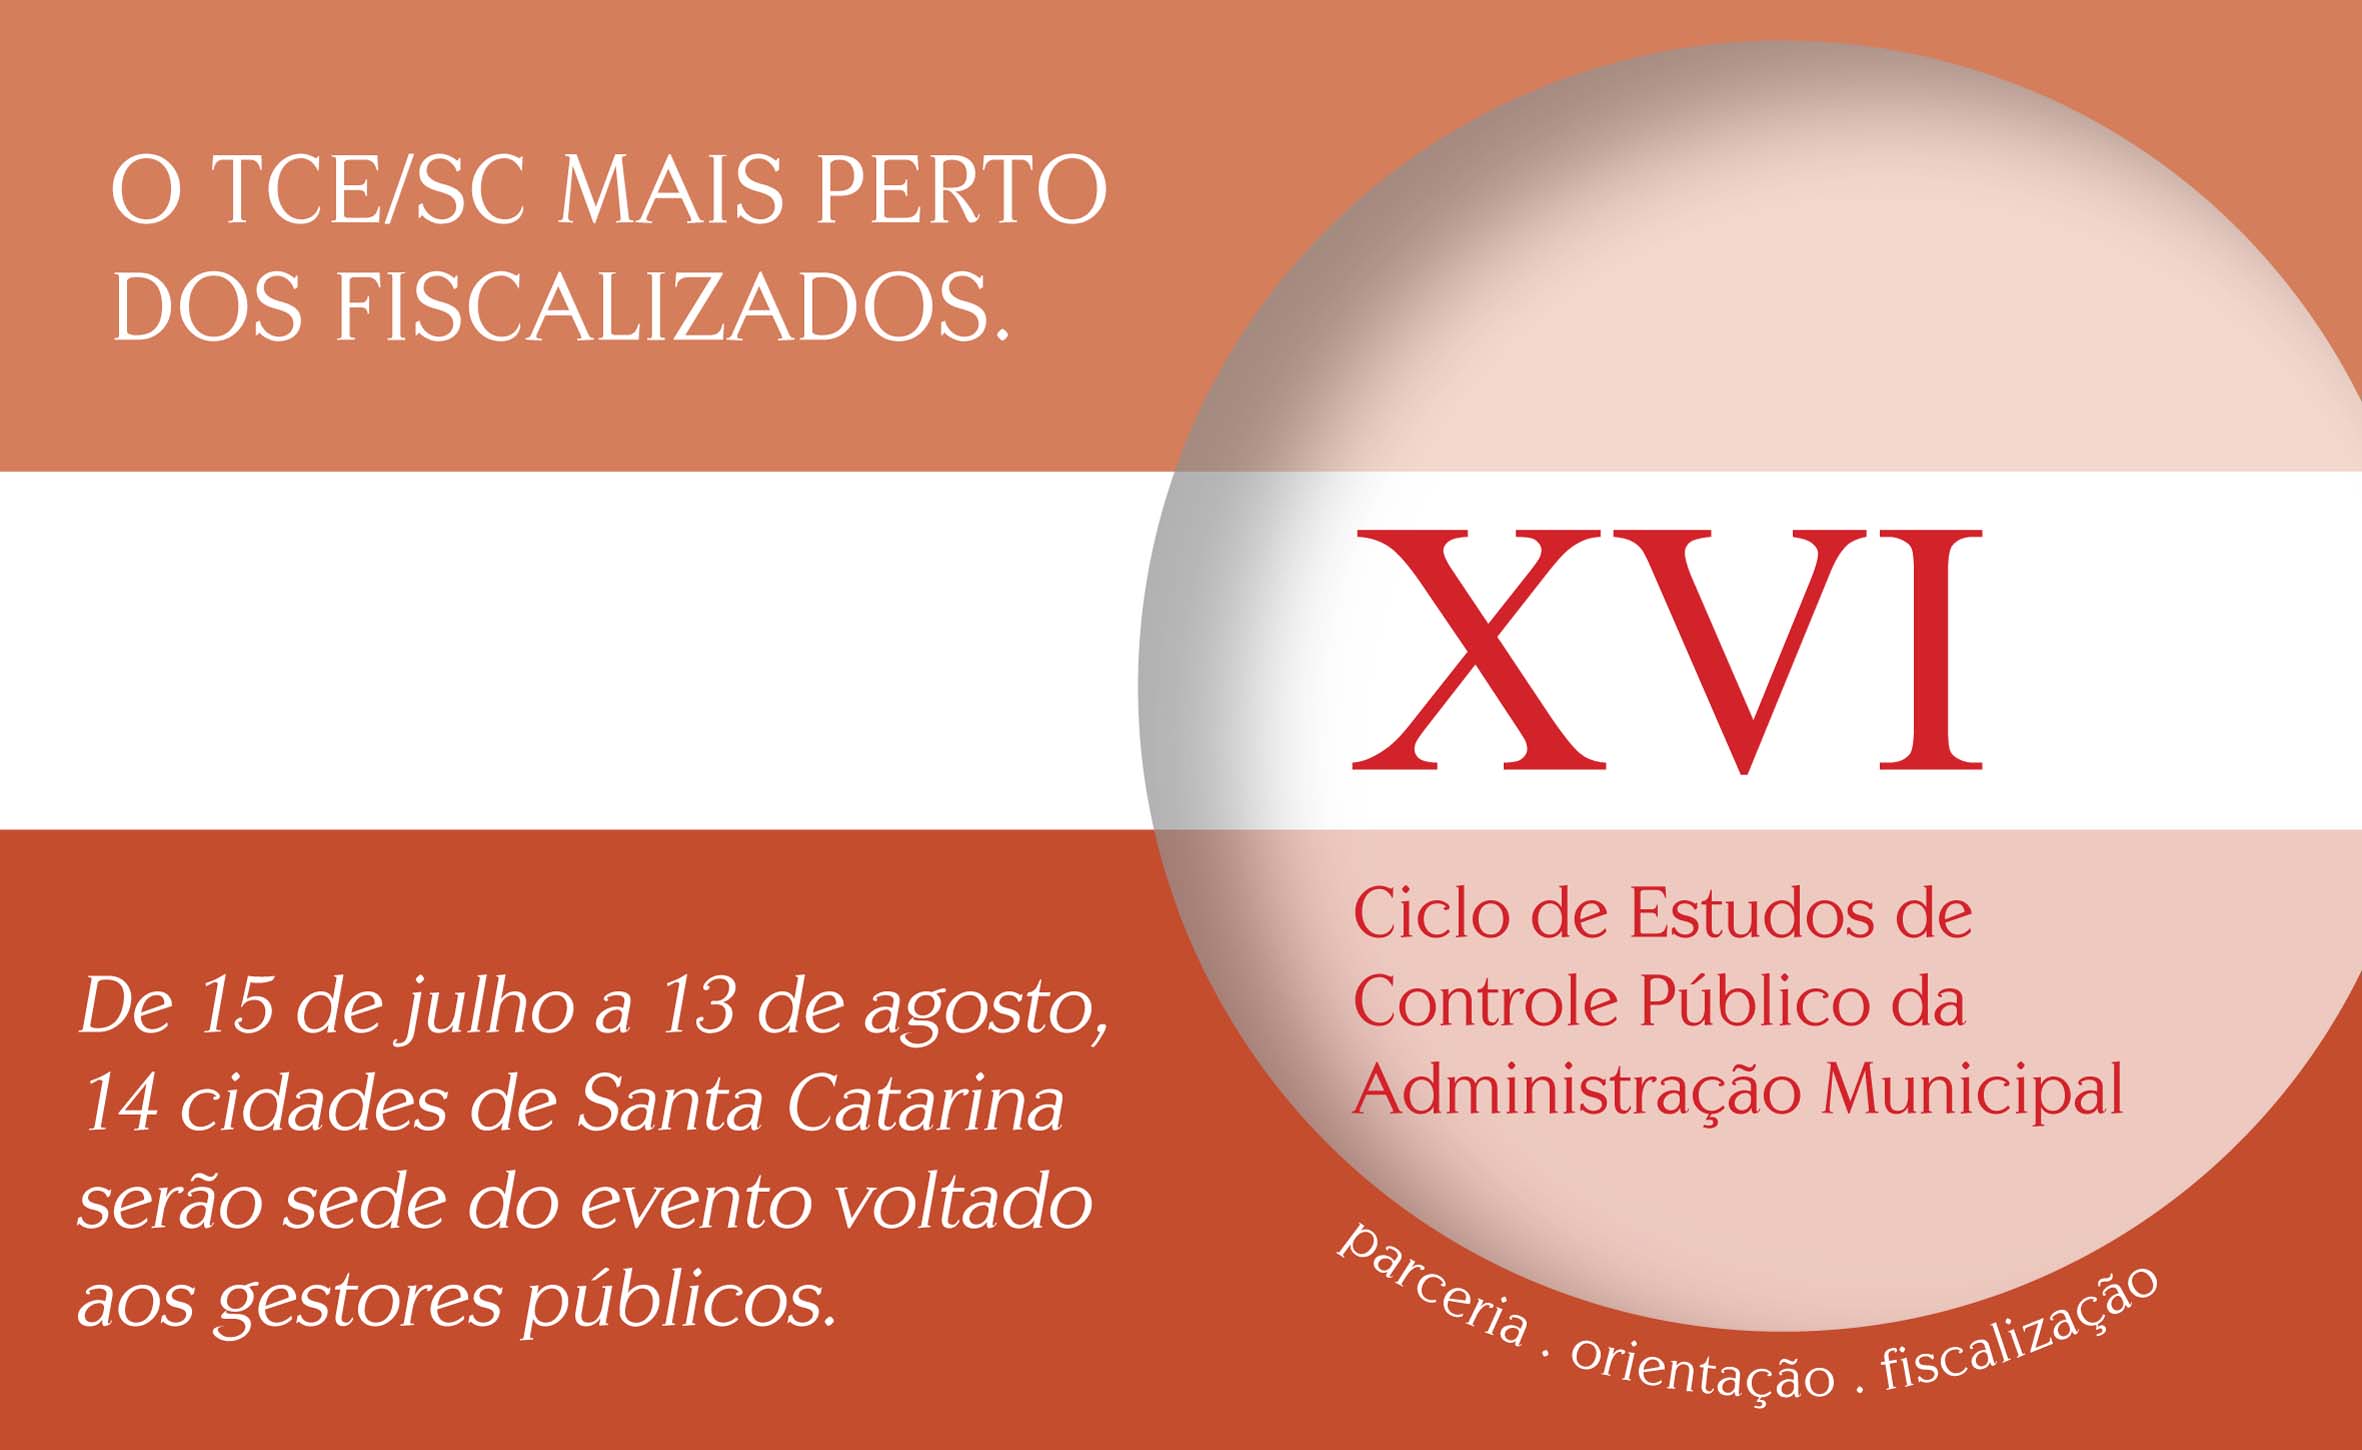 XVI Ciclo de Estudos do TCE/SC será realizado em Palhoça, Criciúma e Capivari de Baixo na próxima semana